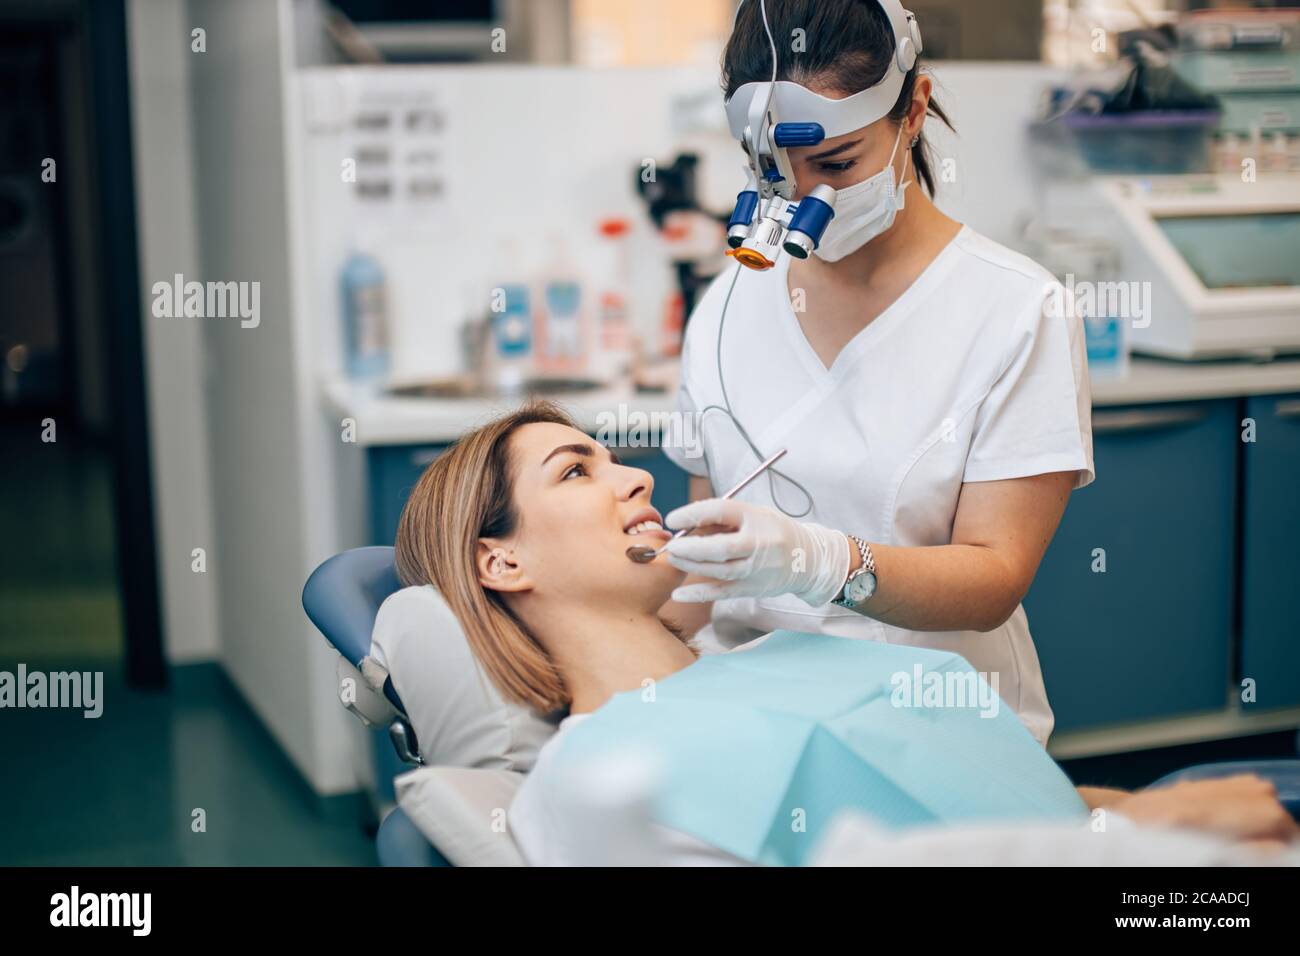 Junge Zahnarzt Arzt in weißen Uniform und spezielle Stirnlampe untersuchen  die Zähne des Patienten, loszuwerden, verdorbene Zähne Stockfotografie -  Alamy